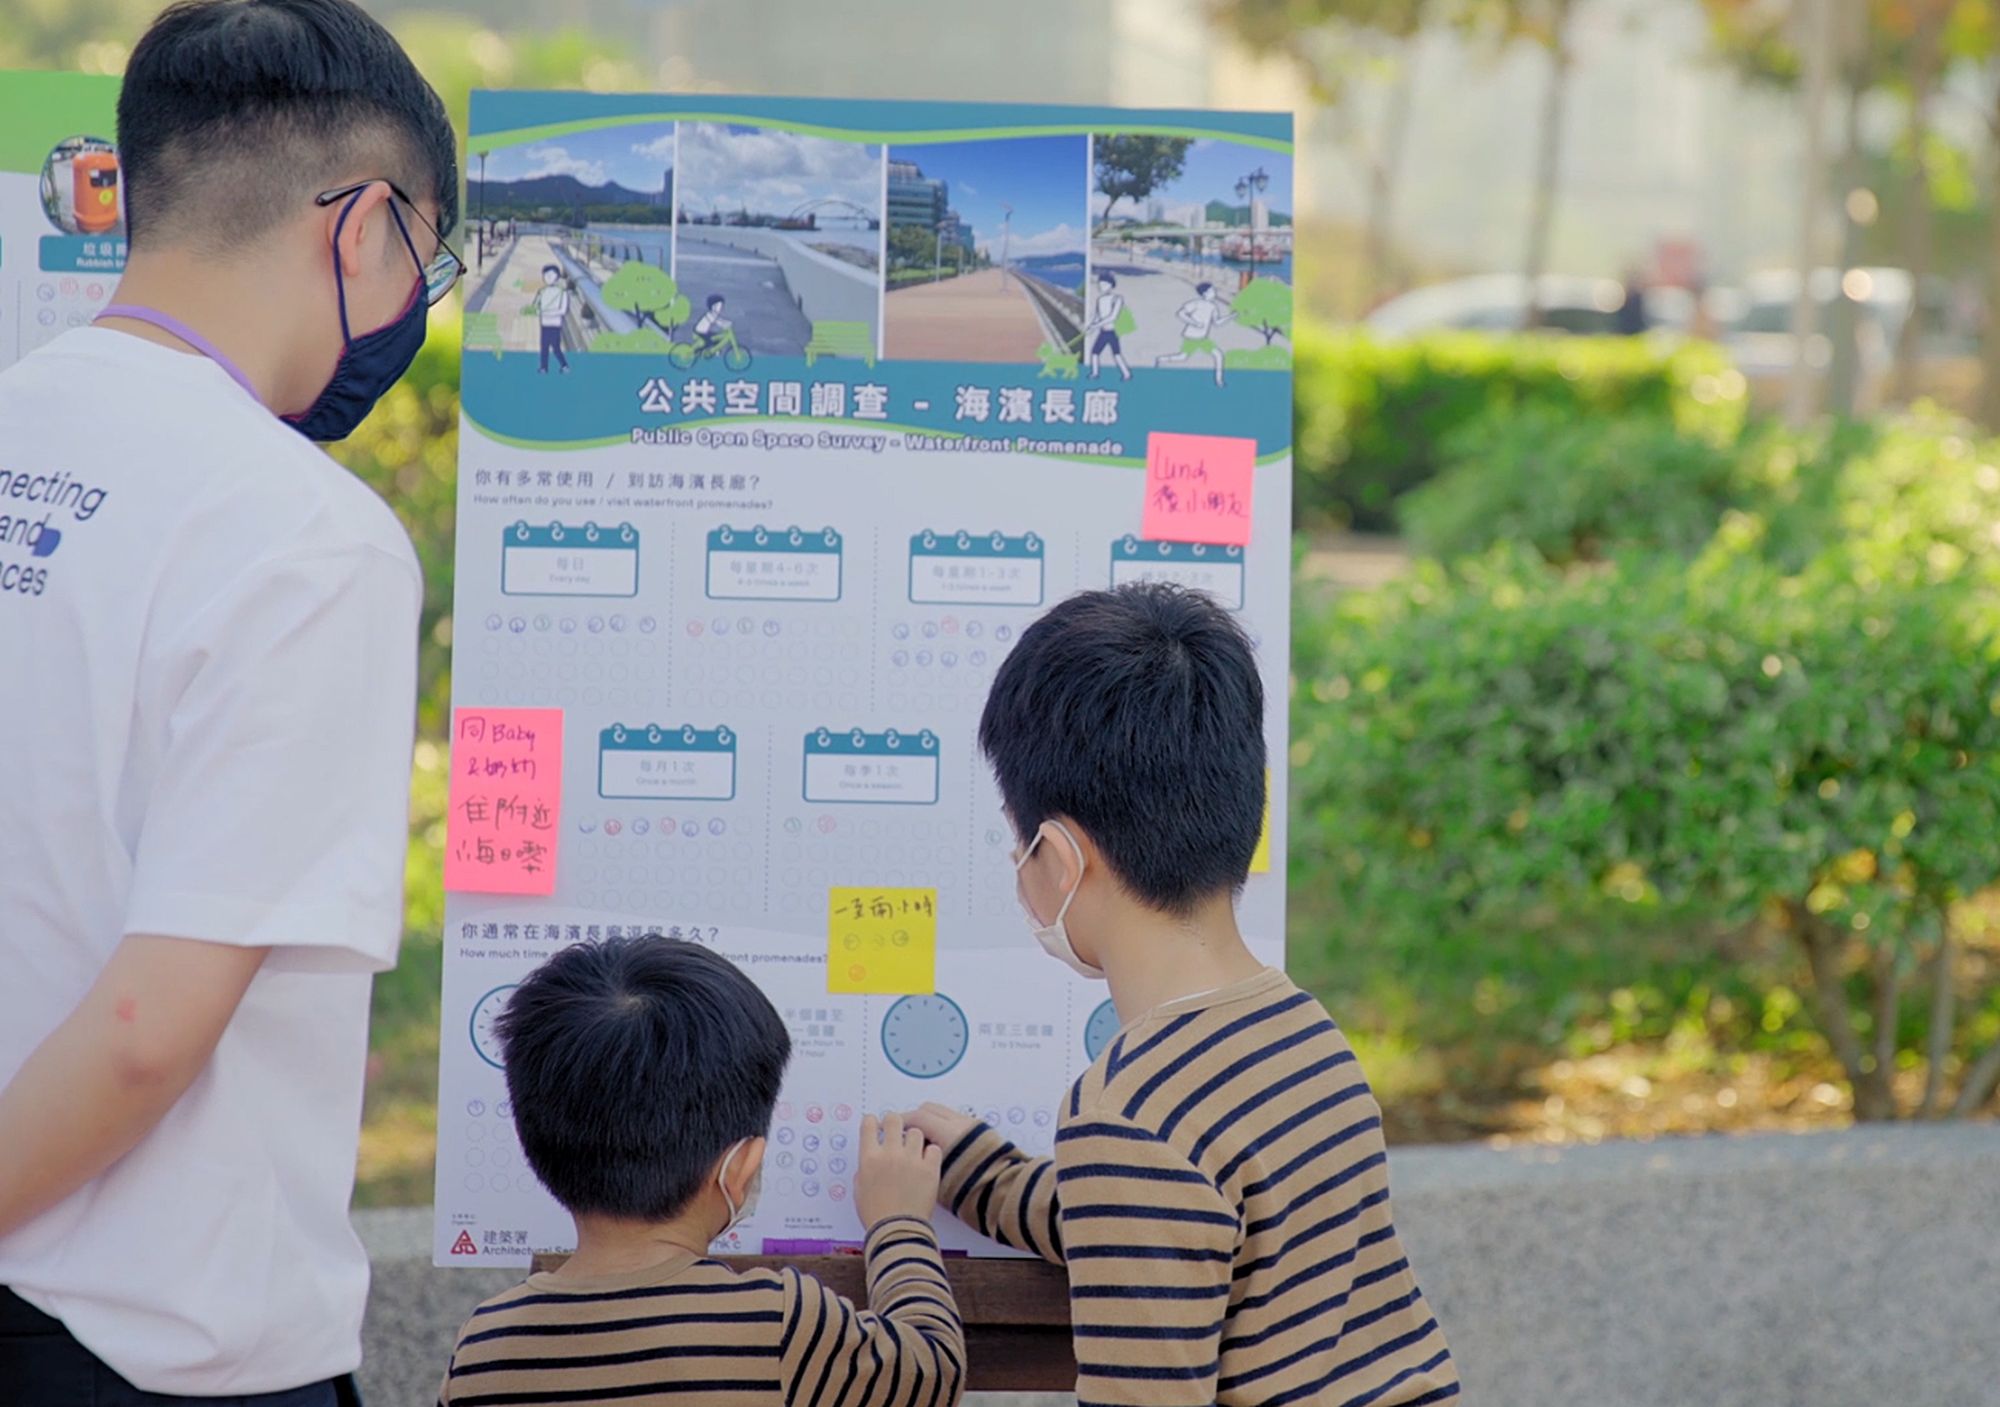 建築署的項目團隊邀請了逾百位市民透過街頭投票表達對公共空間的想法及願景。